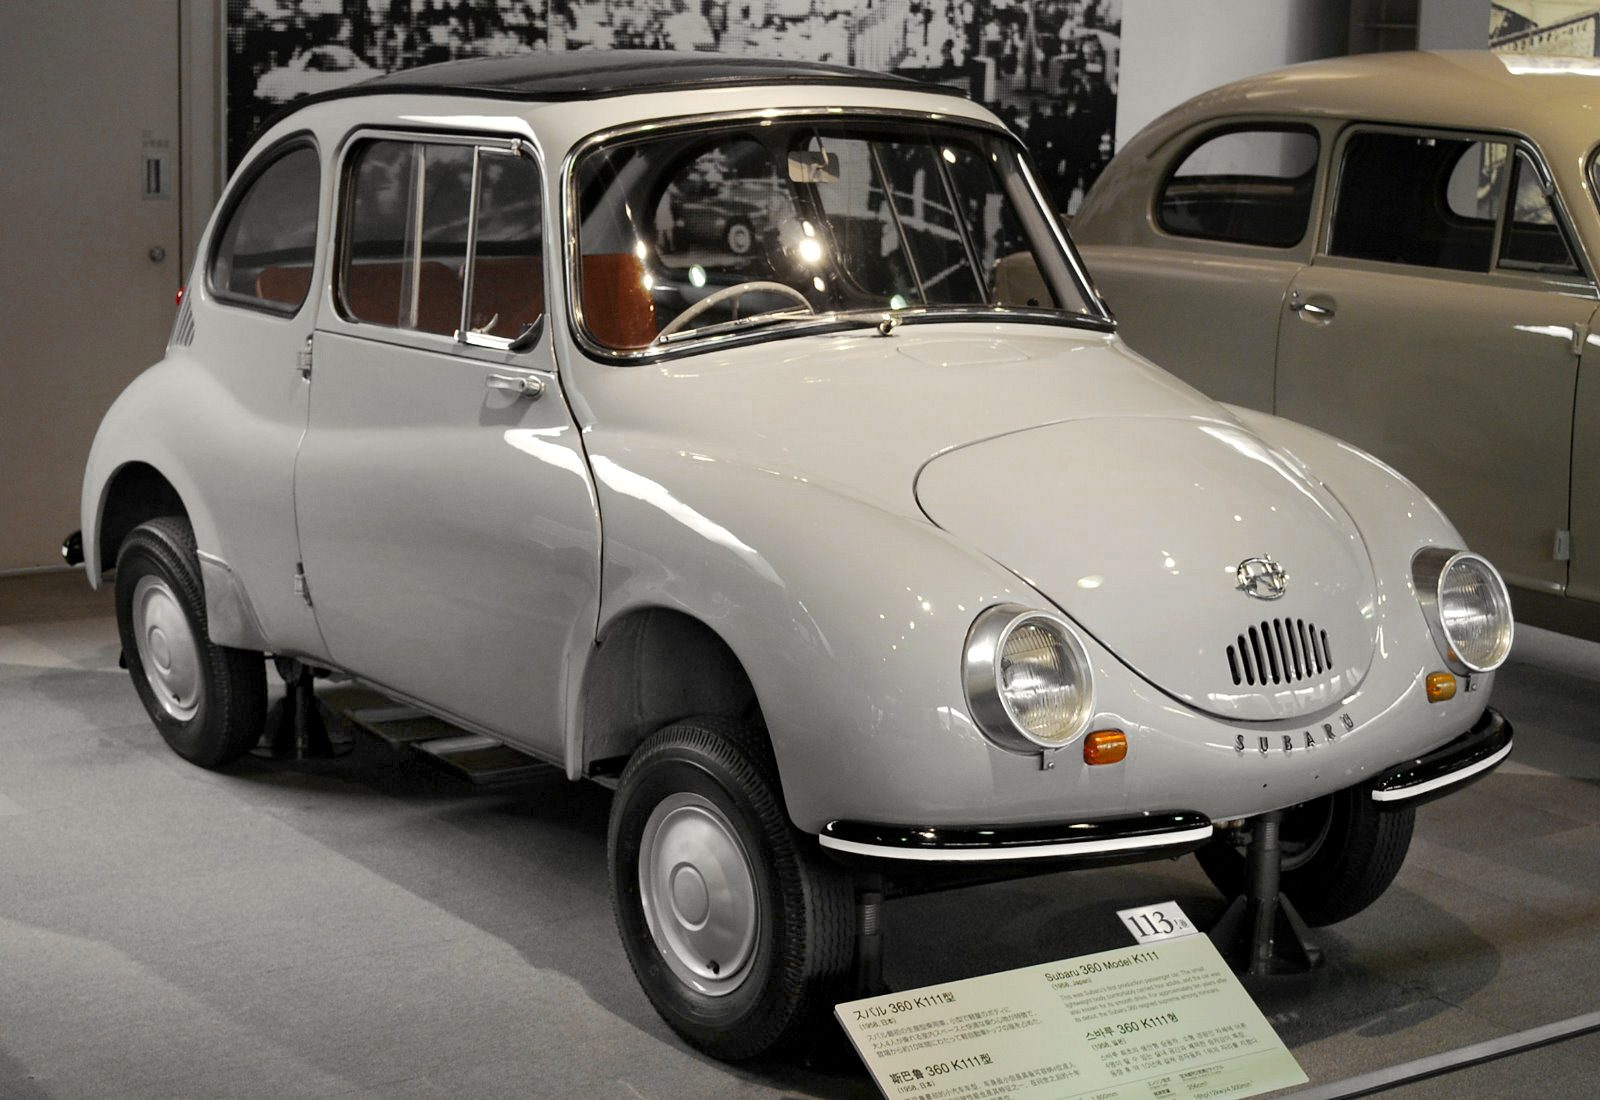 3 mars 1958 – Subaru présente sa première voiture